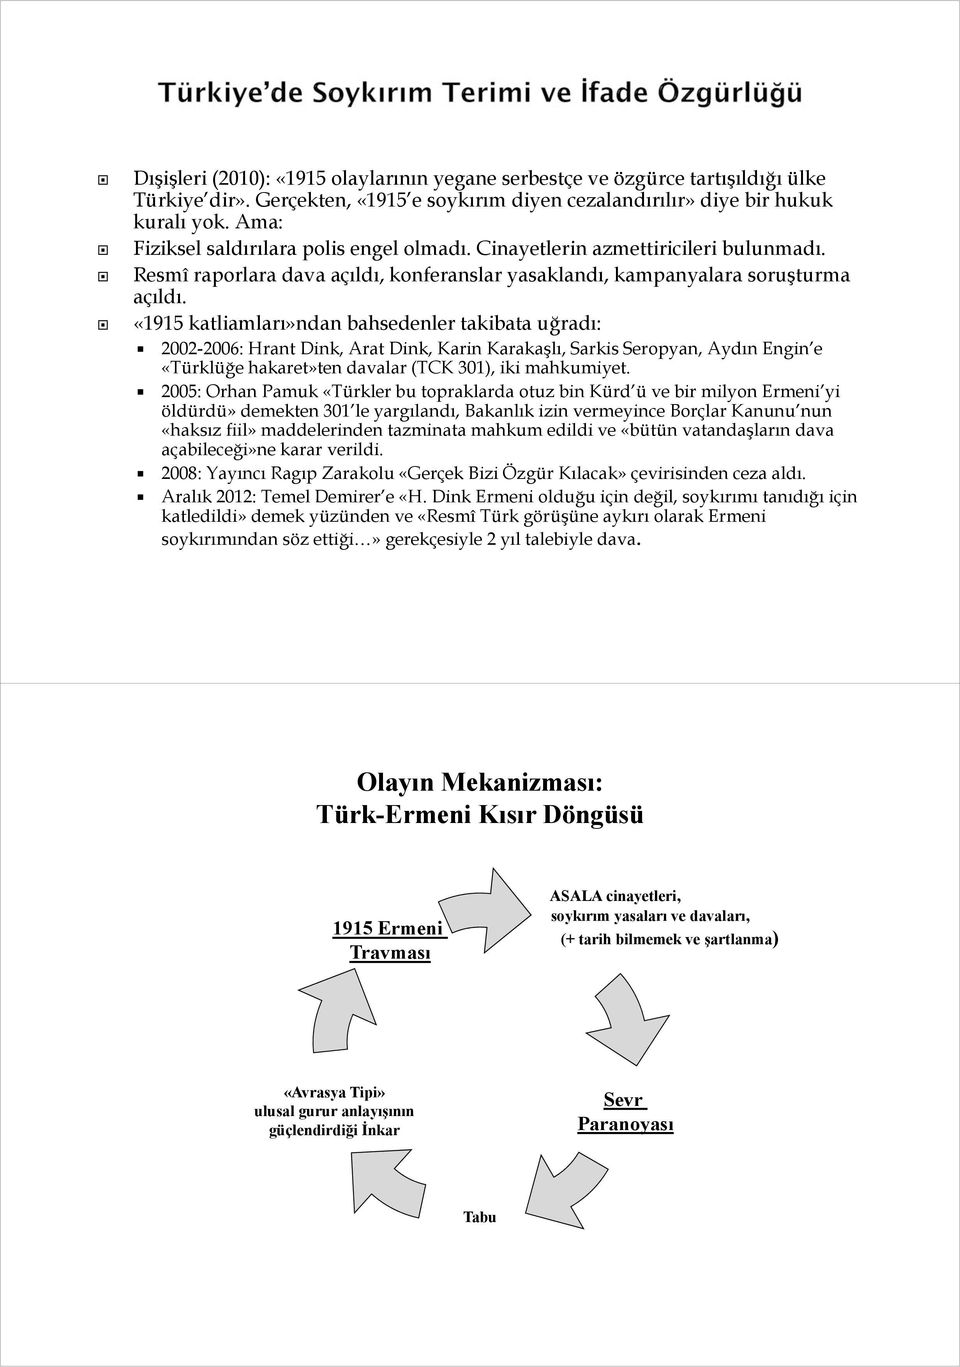 «1915 katliamları»ndan bahsedenler takibata uğradı: 2002-2006: Hrant Dink, Arat Dink, Karin Karakaşlı, Sarkis Seropyan, Aydın Engin e «Türklüğe hakaret»ten davalar (TCK 301), iki mahkumiyet.